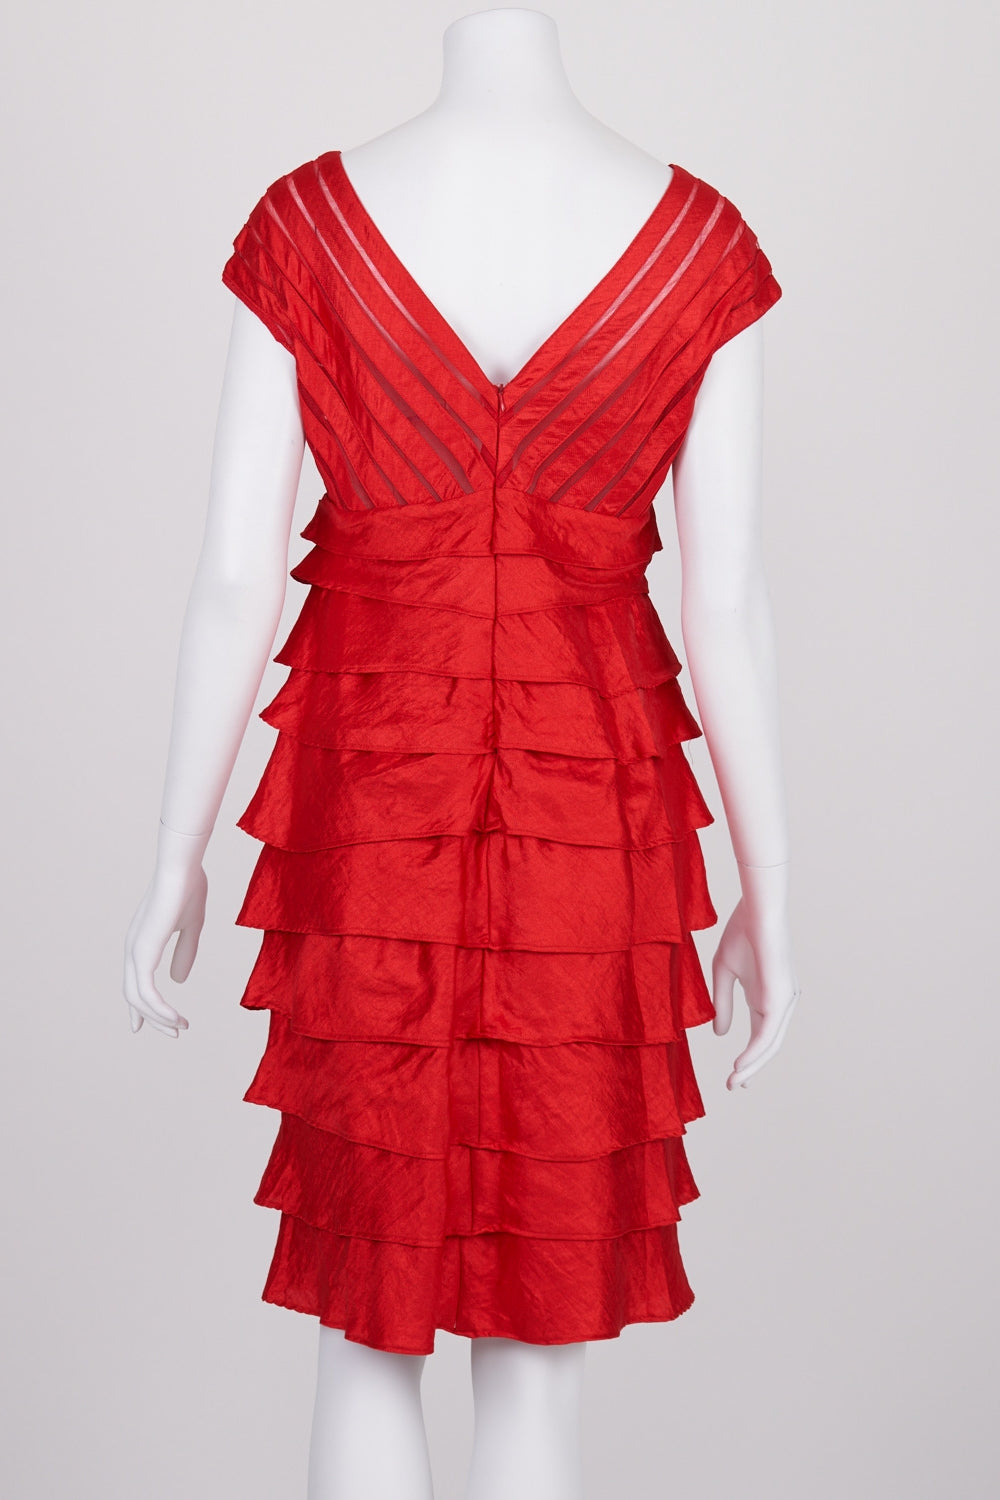 Vanilla Dream Red Layered Sleeveless Dress 12